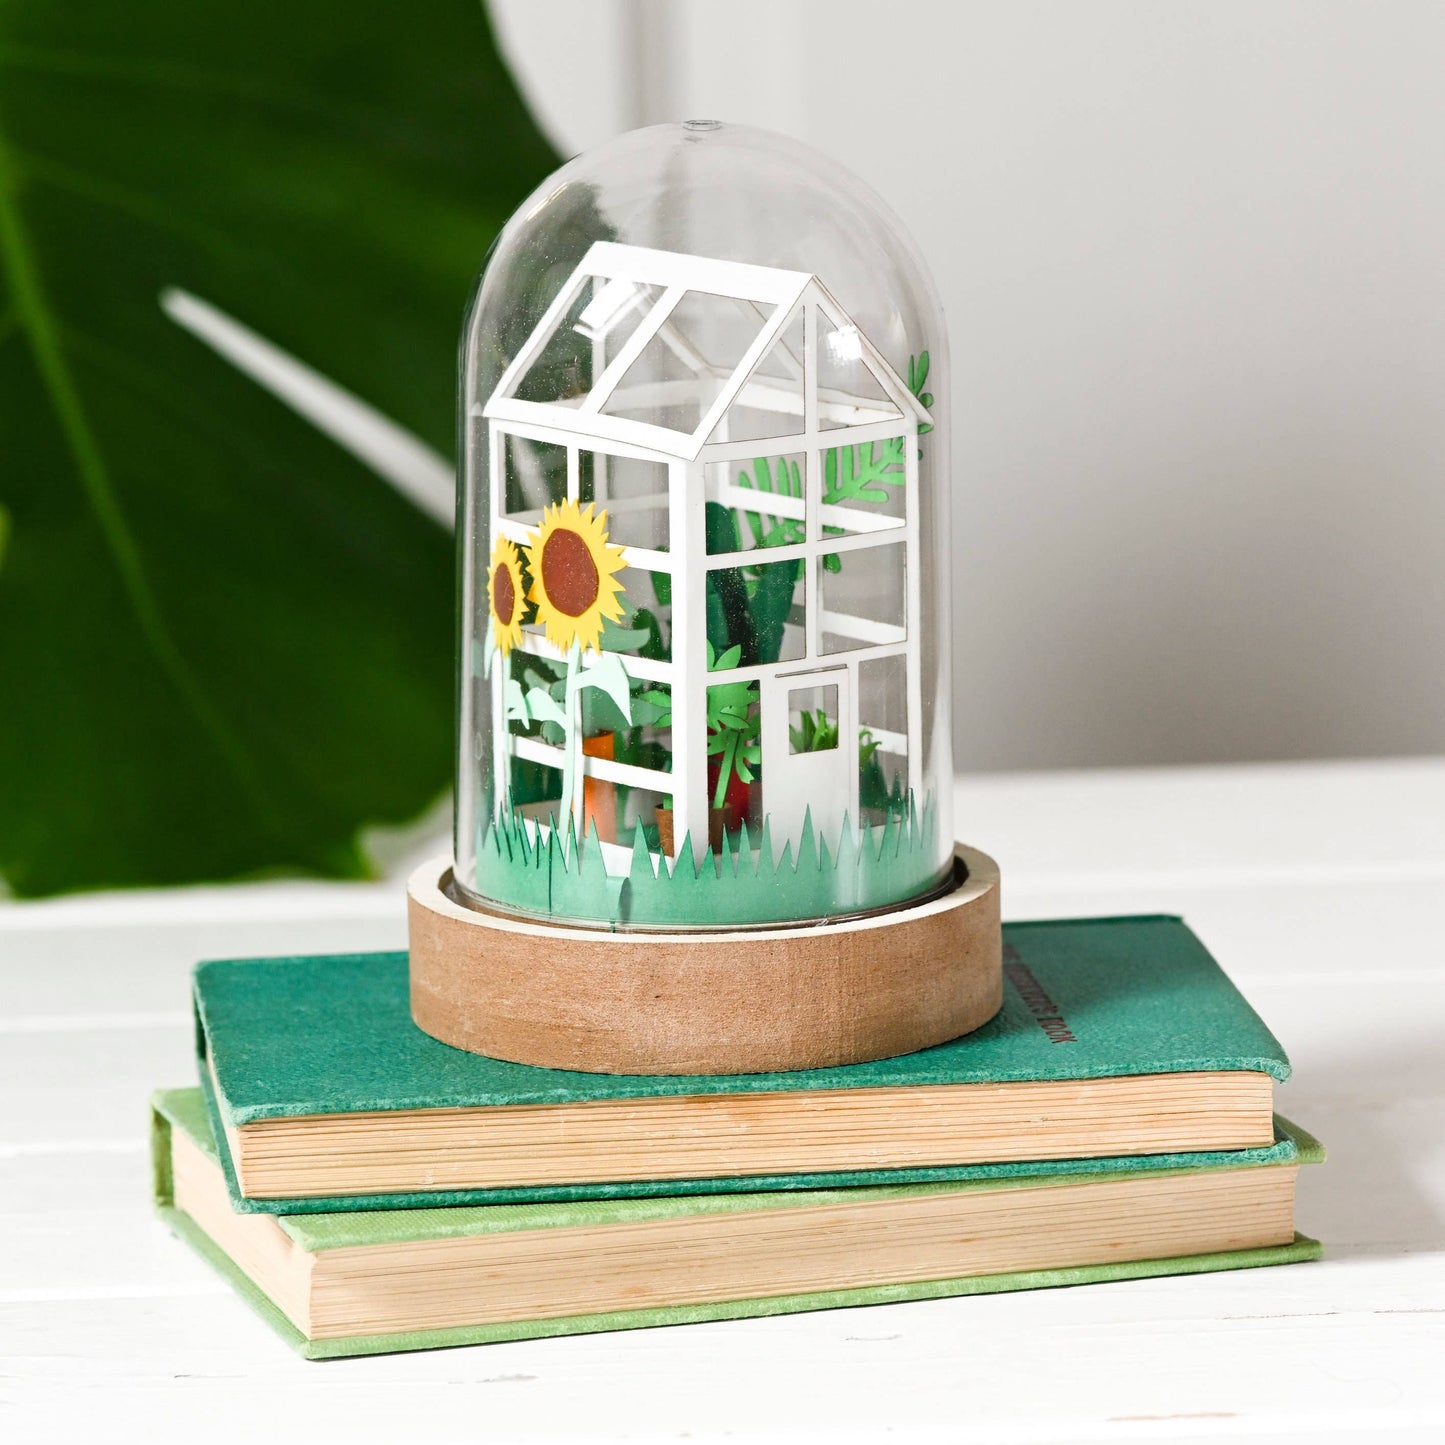 DIY Paper Greenhouse Craft Kit